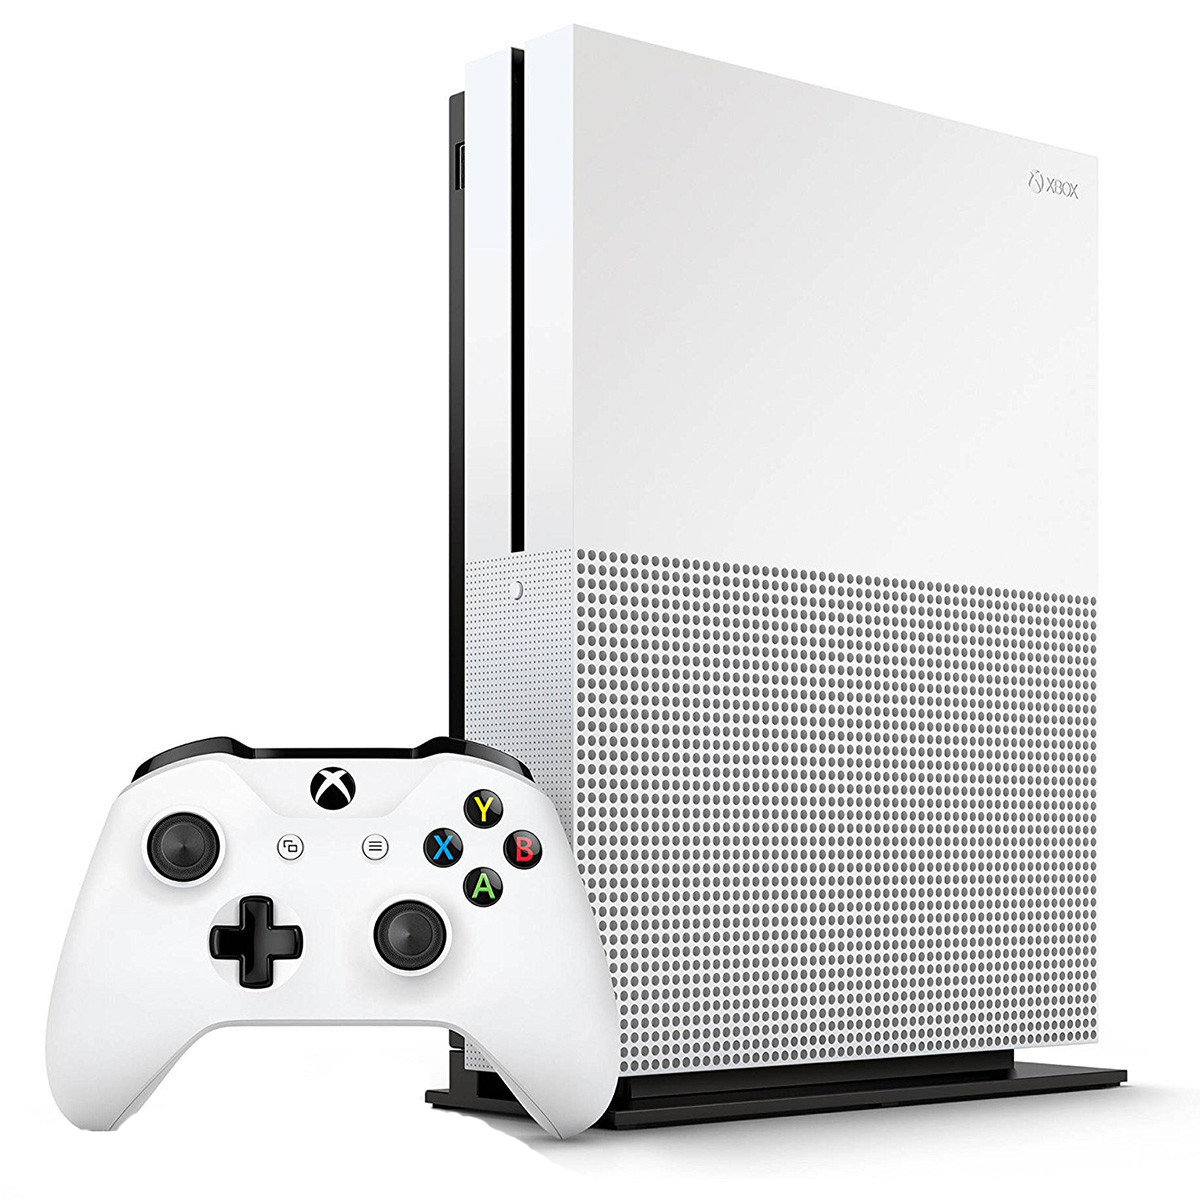 کنسول بازی مایکروسافت مدل Xbox One S ظرفیت ۱ ترابایت